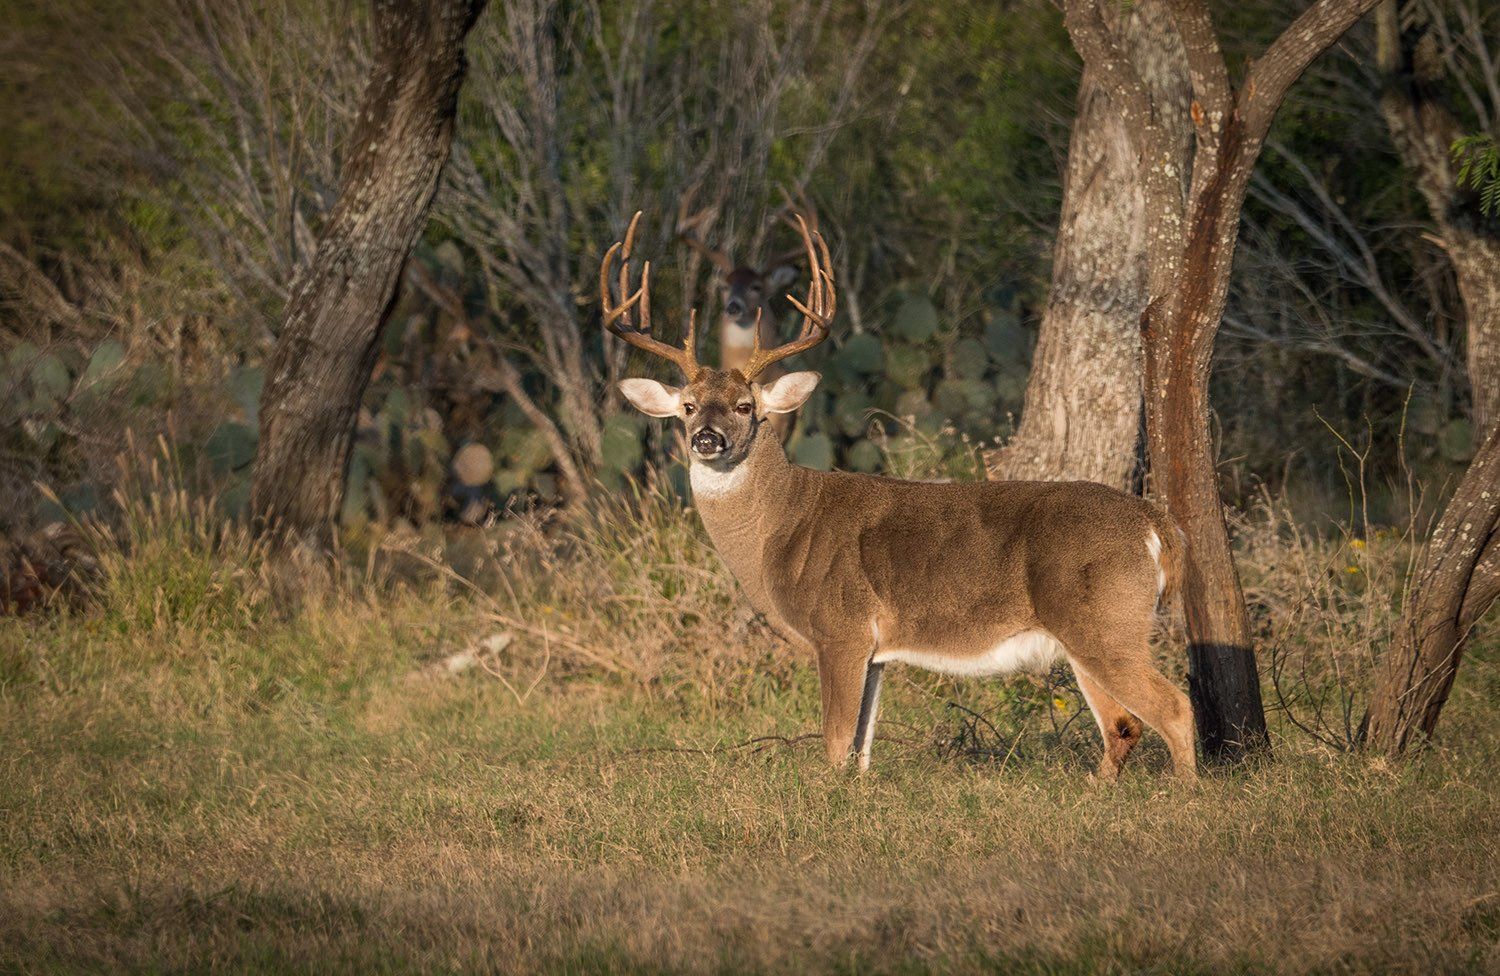 hunting trip south texas